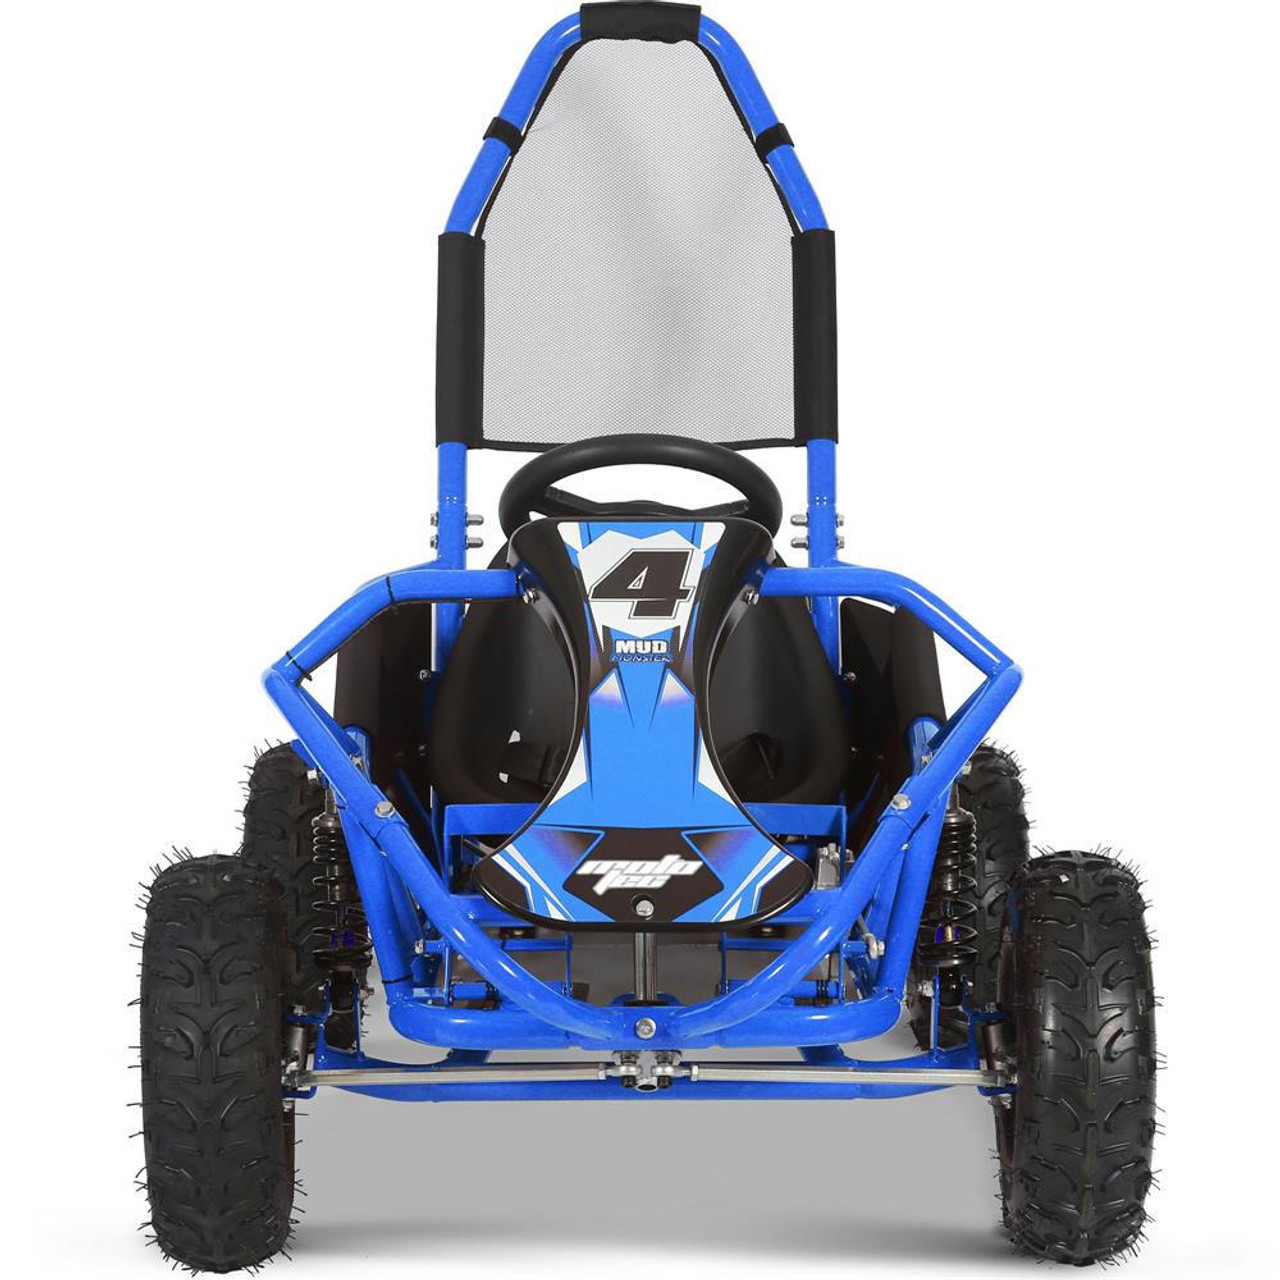  Mototec Mud Monster 98cc Go Kart Full Suspension Blue 